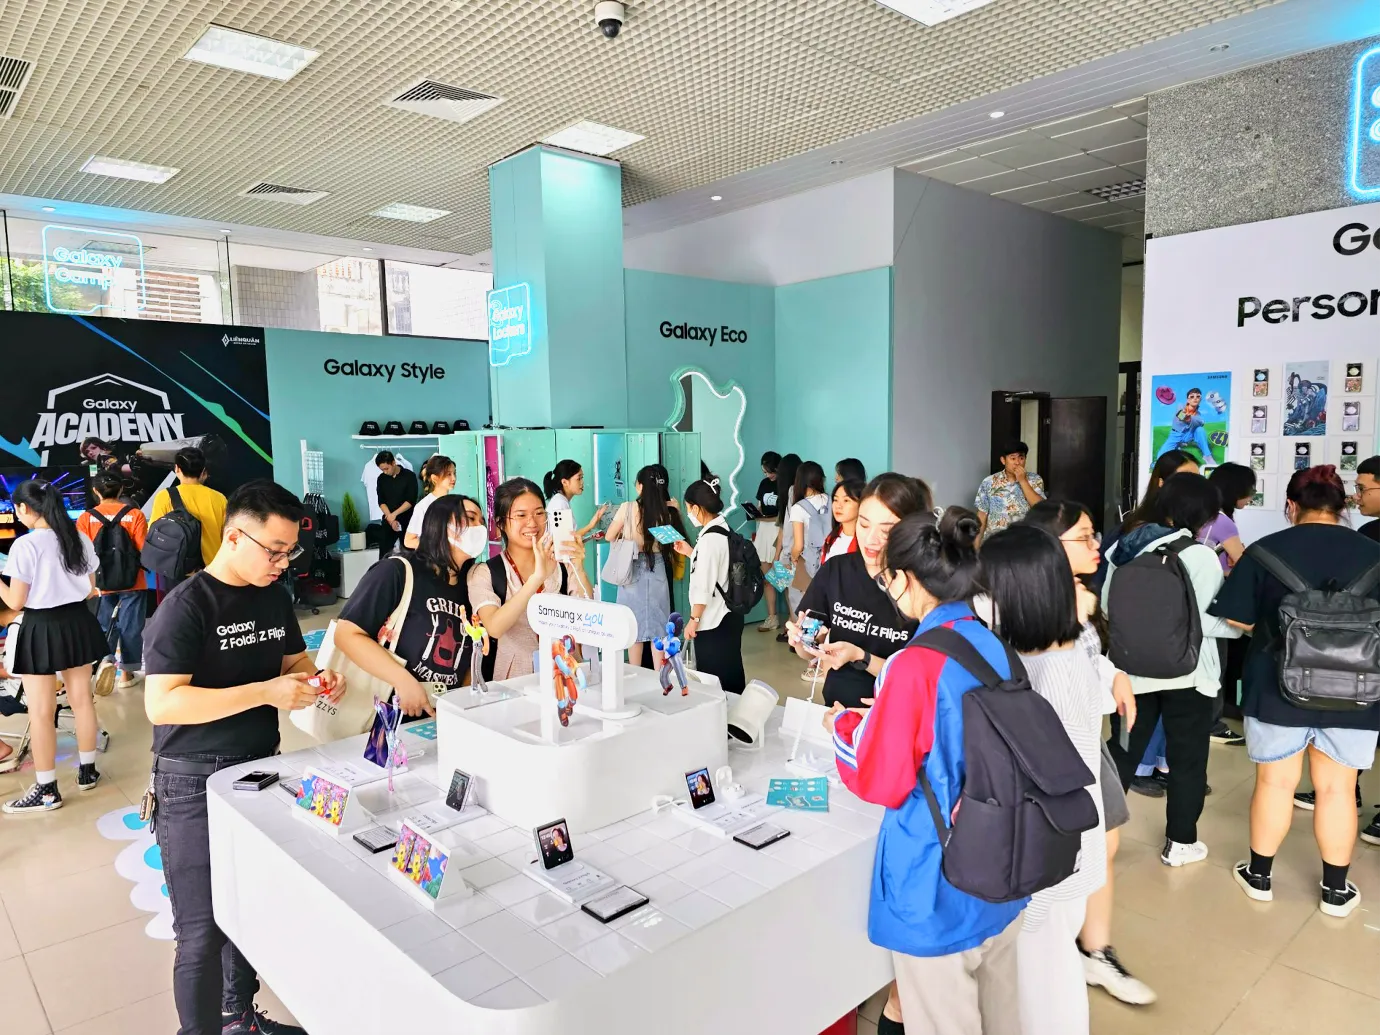 Samsung khởi động Galaxy Campus - Sân chơi công nghệ cho sinh viên các trường Đại học